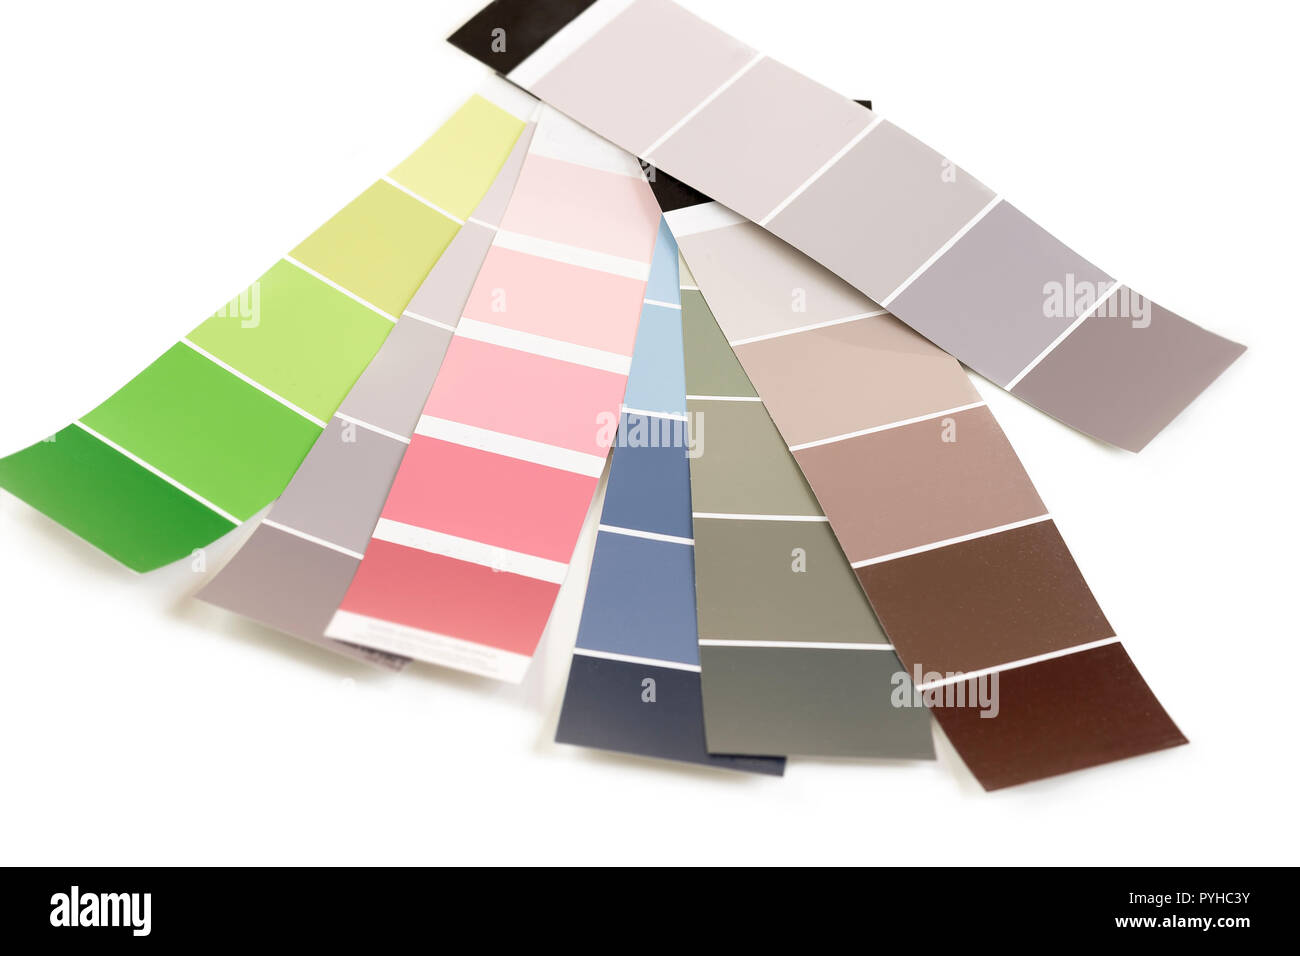 Palette de couleurs, des échantillons de diverses teintes de peinture pour catalogue Banque D'Images